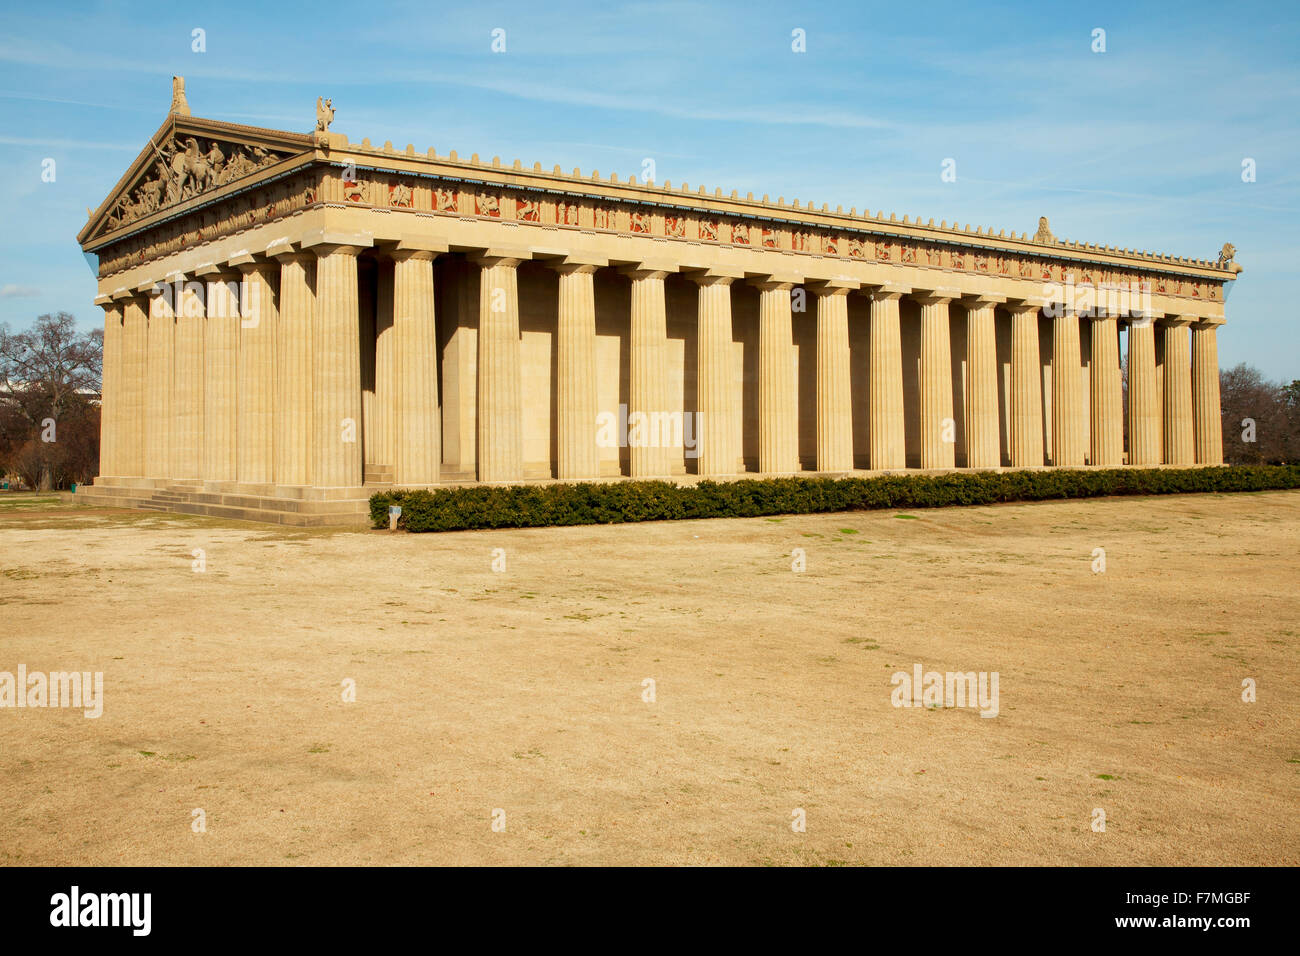 El Partenón, Nashville, Tennessee, el parque Centennial, escala completa réplica del Partenón griego al atardecer Foto de stock